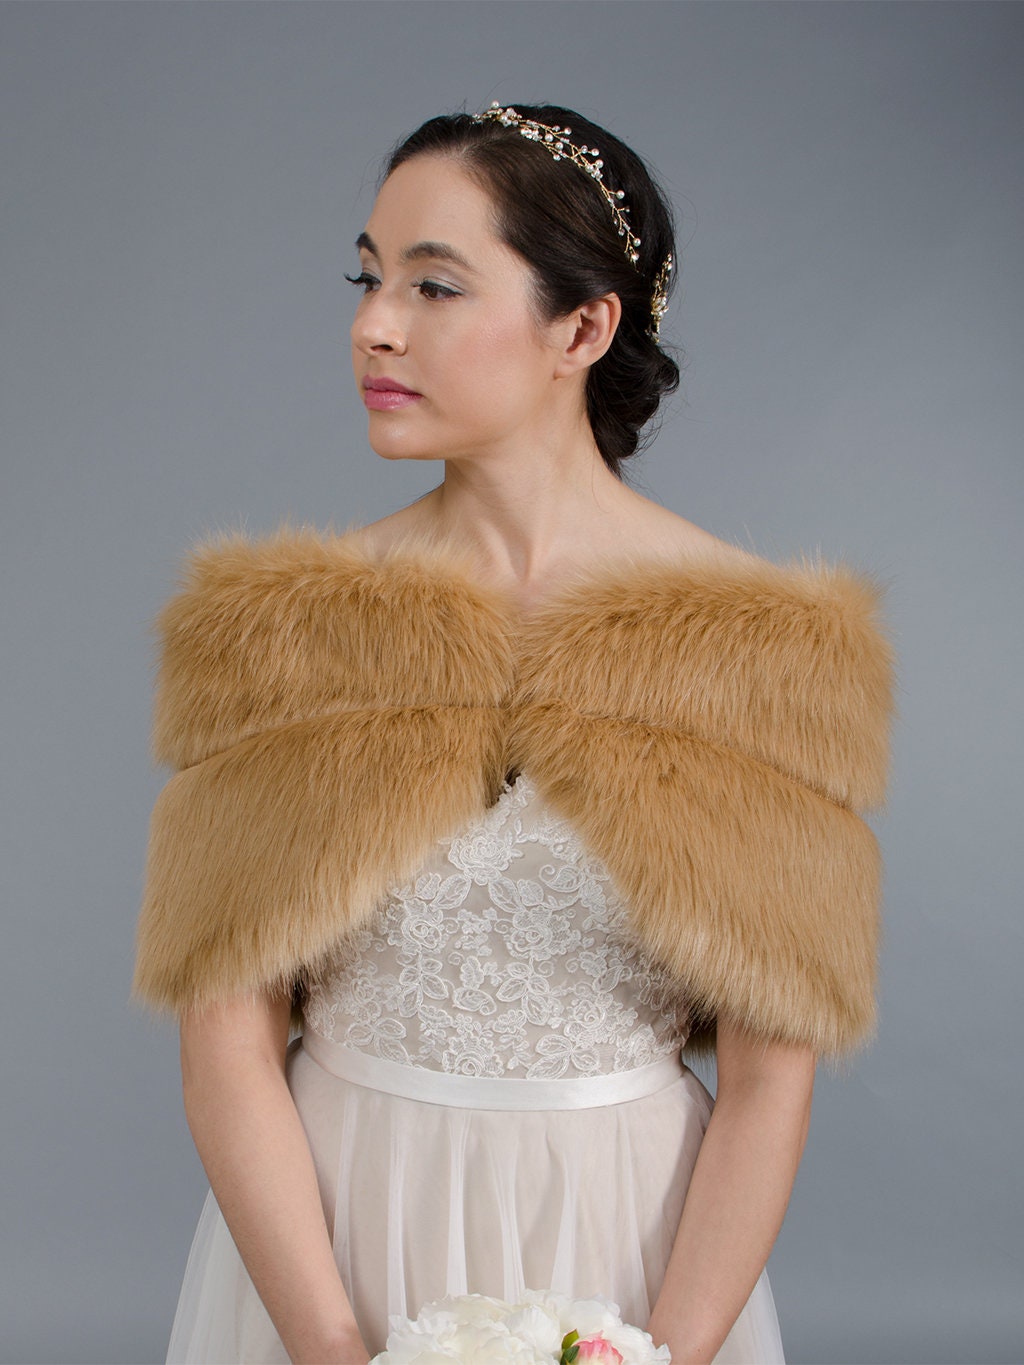 Caramel faux fur wrap faux fur stole faux fur shawl bridal wrap wedding shrug bridal shrug faux fur cape faux fur wrap bridal B003-Caramel